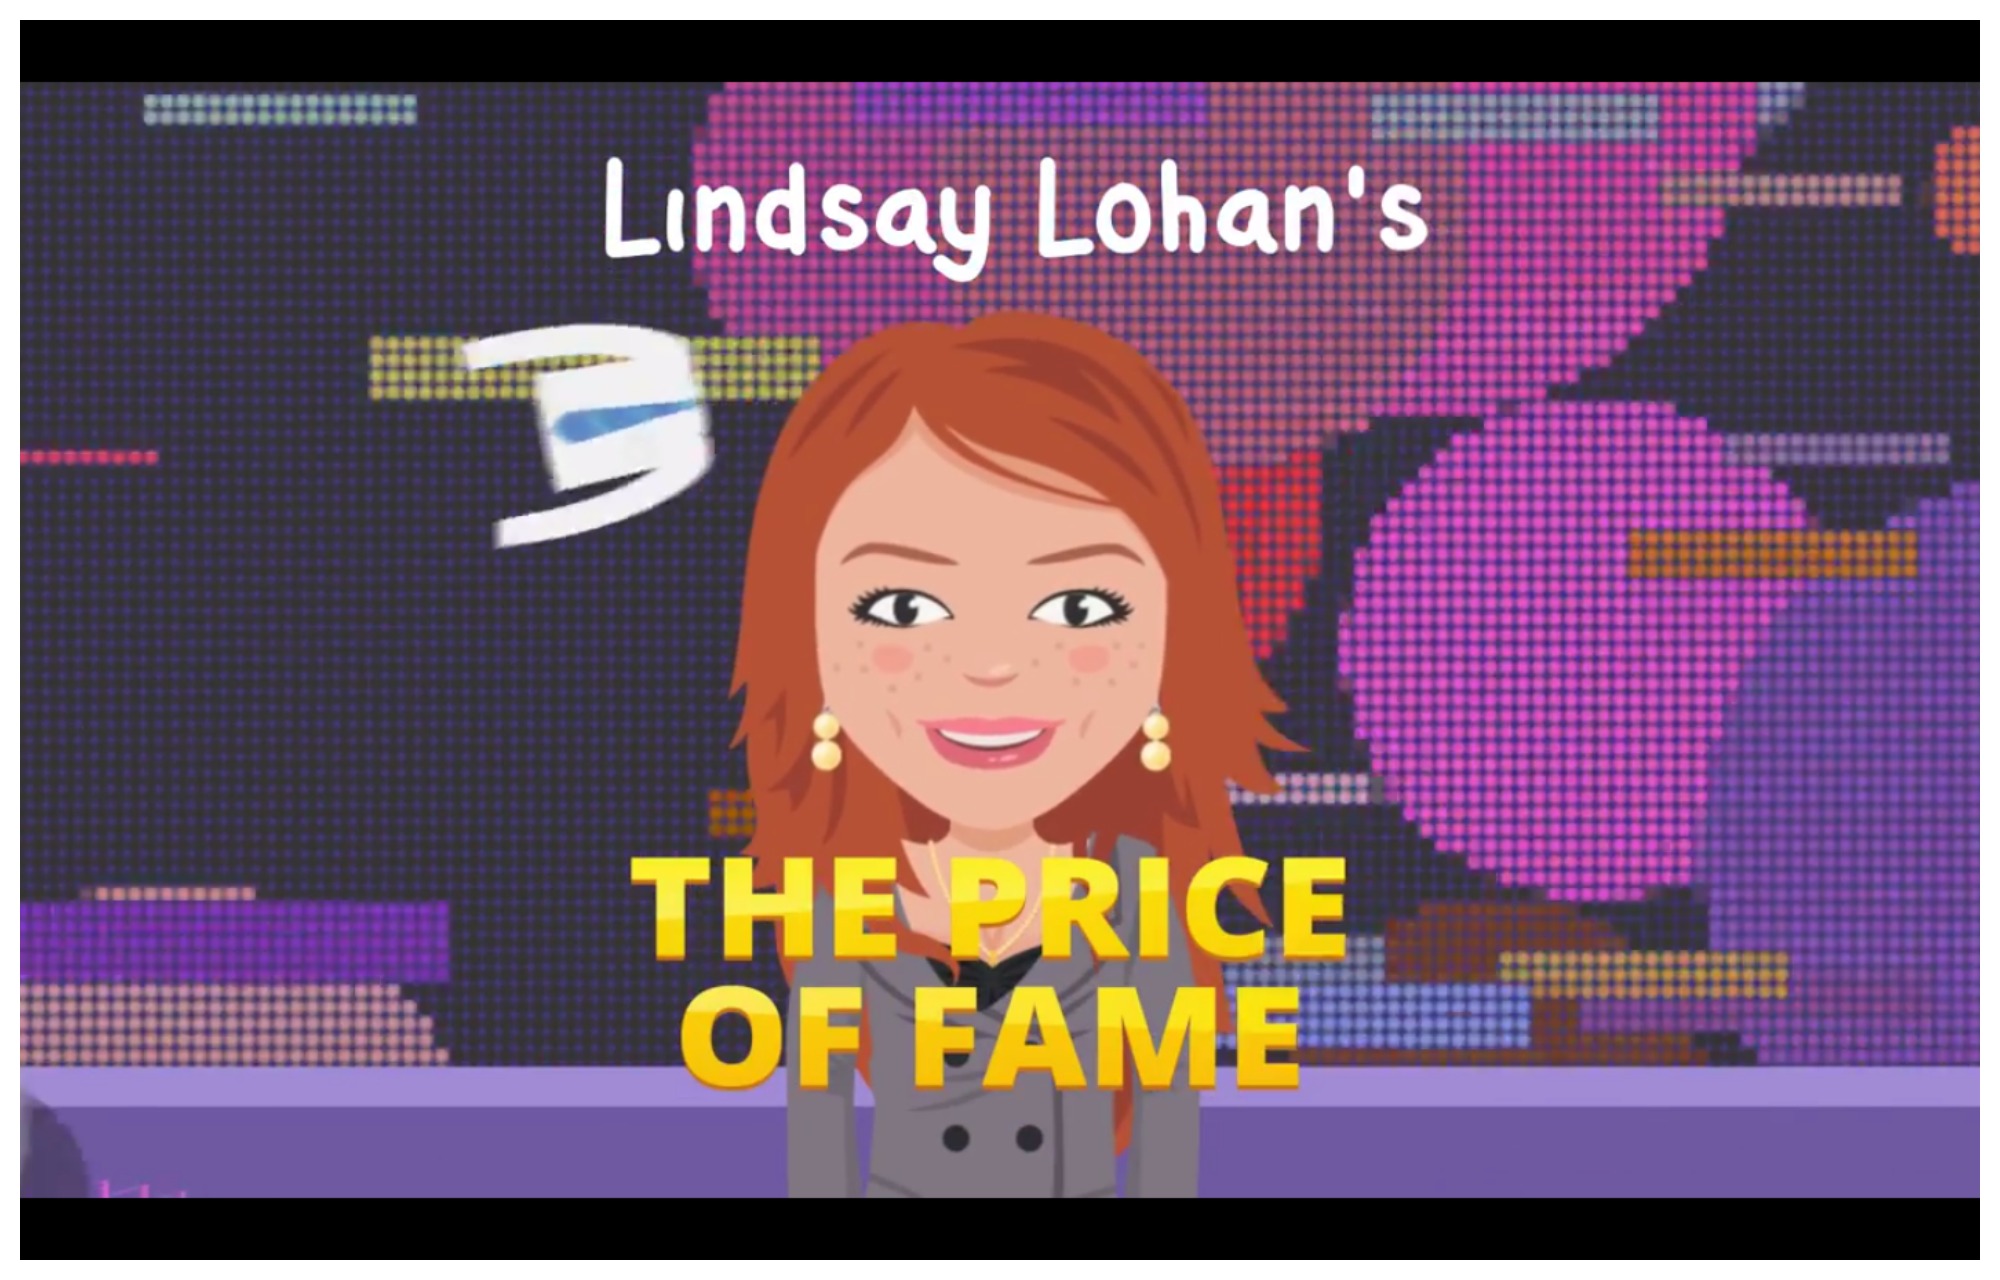 lindsay-lohan-price-of-fame